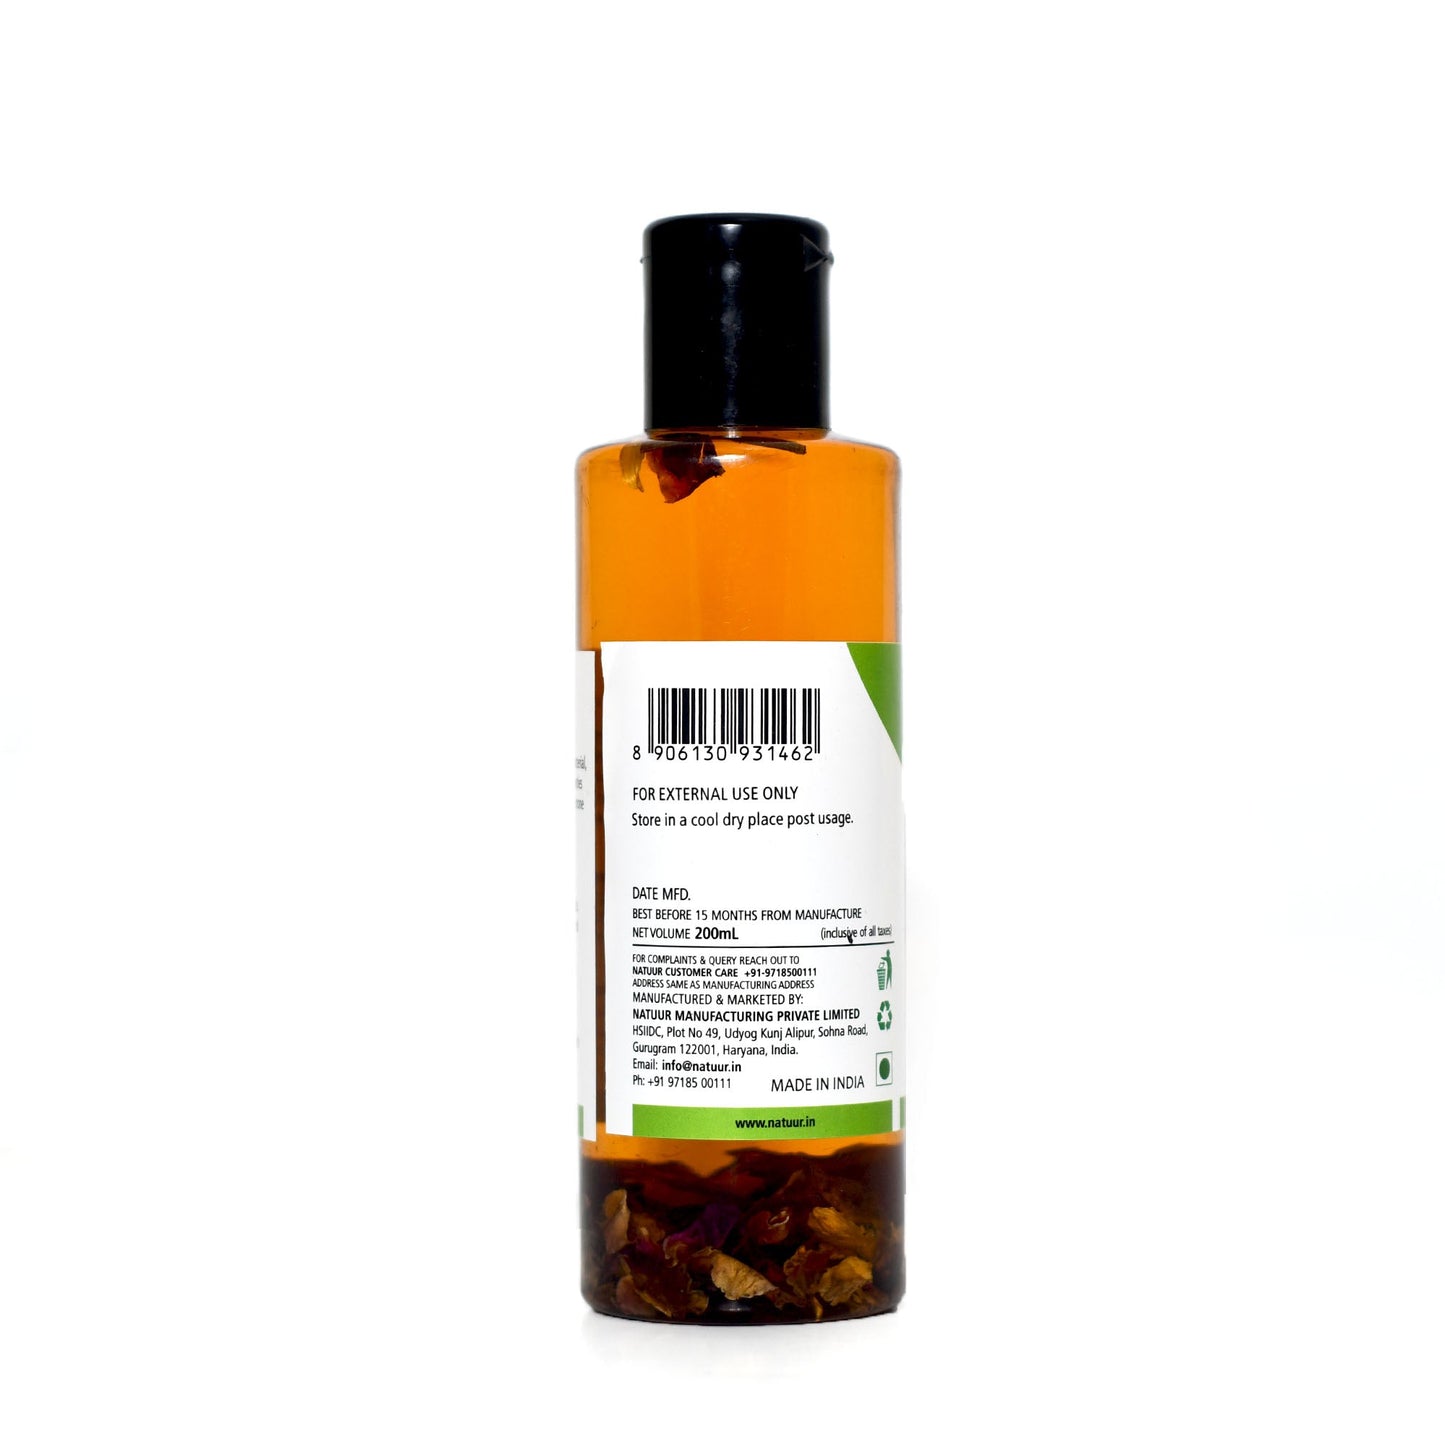 BODY MASSAGE OIL - Rose & Frankinscense-Therupatic Floral Massage Oil